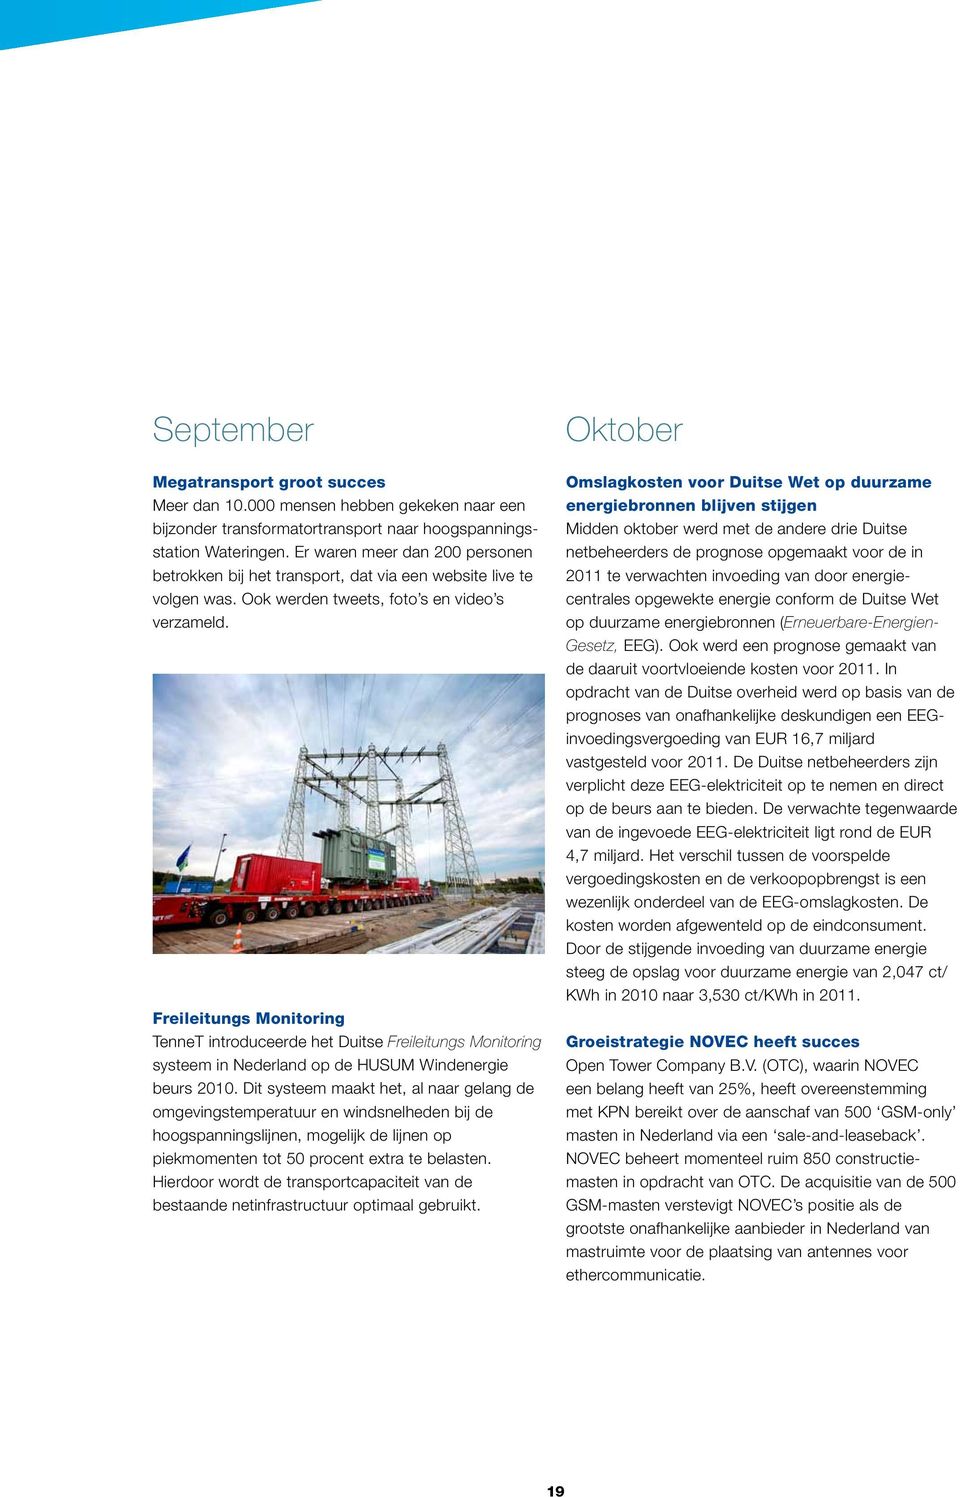 Freileitungs Monitoring TenneT introduceerde het Duitse Freileitungs Monitoring systeem in Nederland op de HUSUM Windenergie beurs 2010.